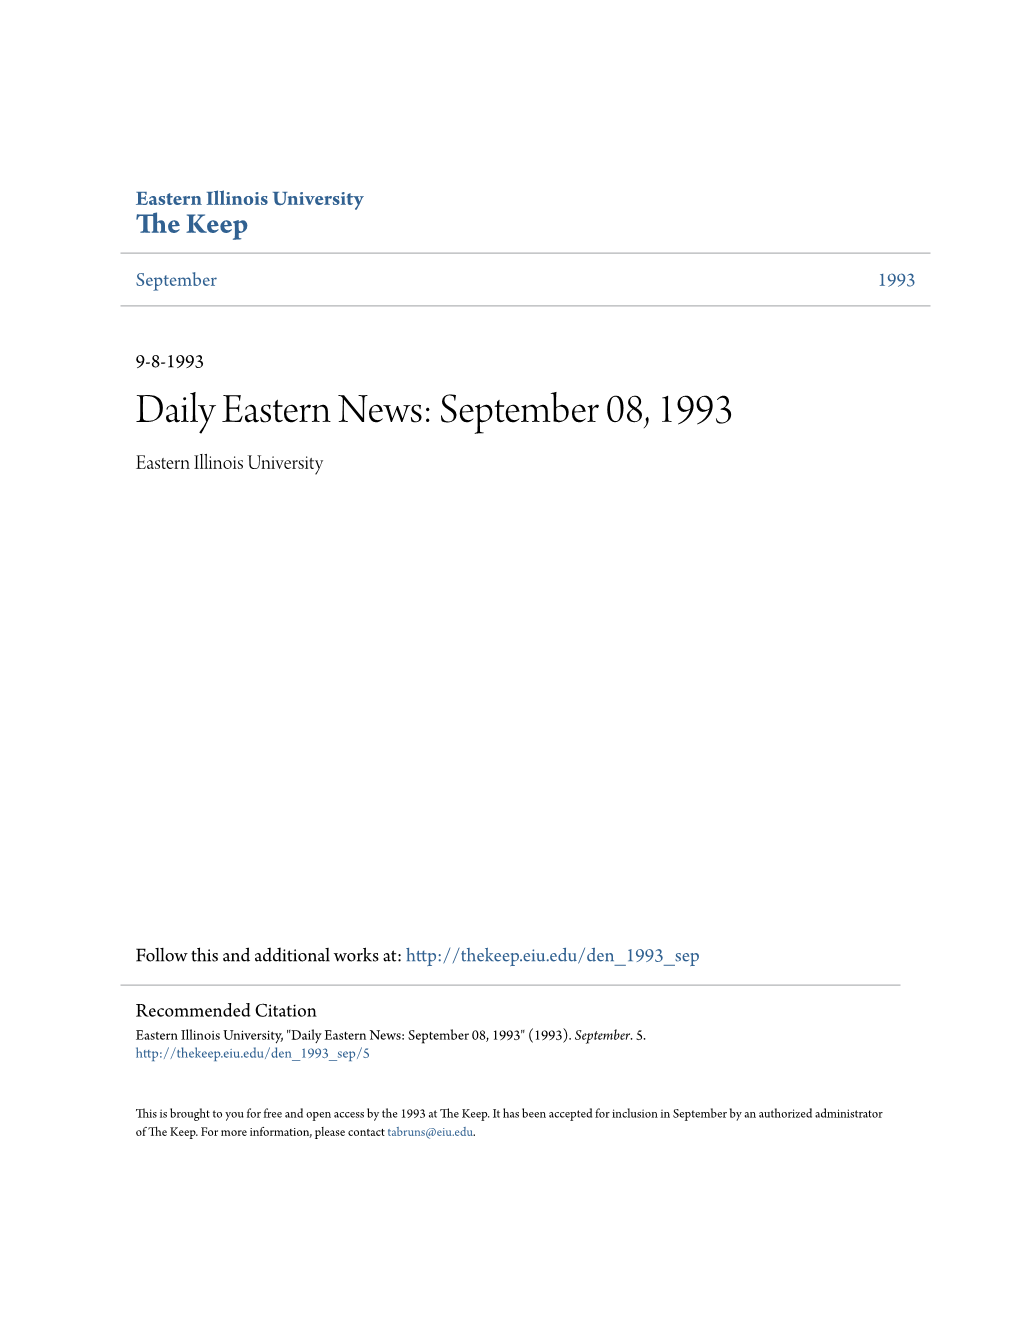 Daily Eastern News: September 08, 1993 Eastern Illinois University